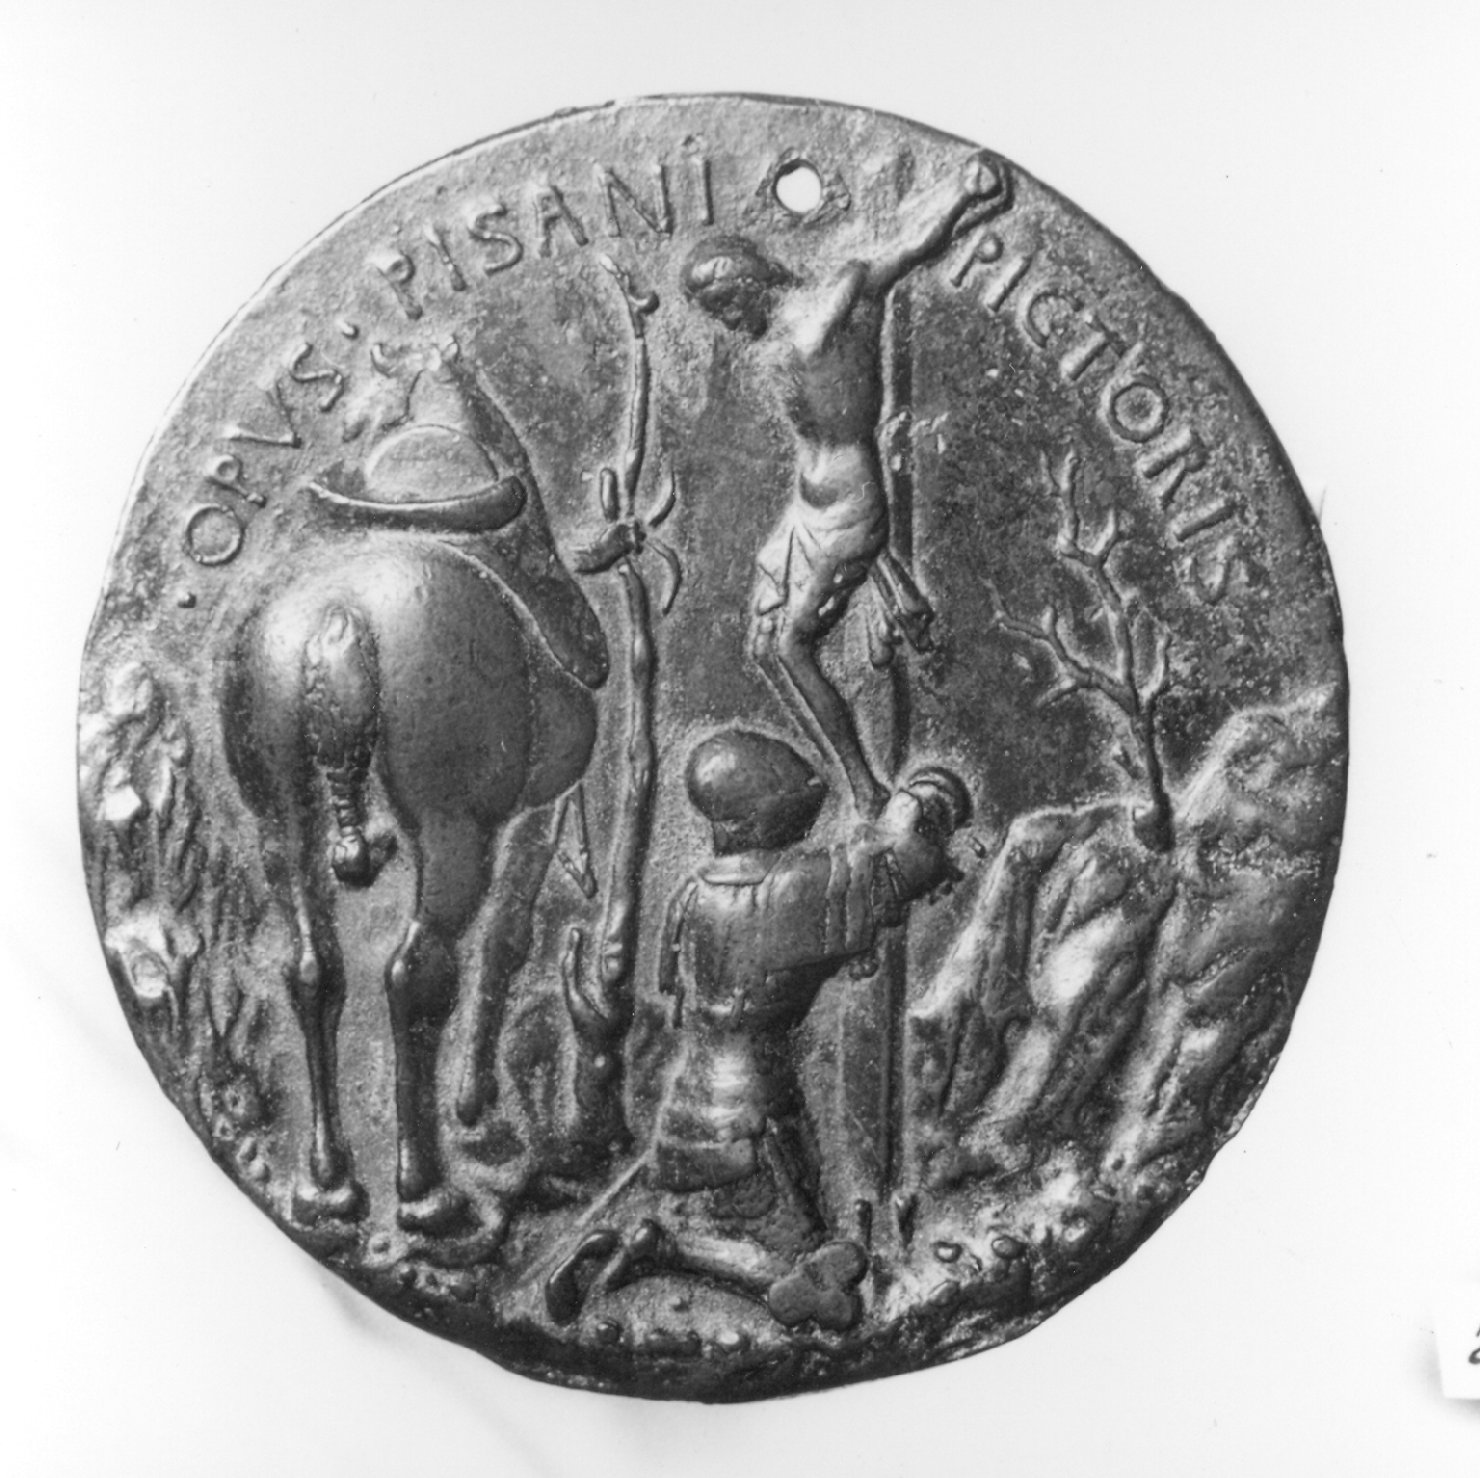 devoto in preghiera davanti a Cristo crocifisso (medaglia, elemento d'insieme) di Antonio di Puccio Pisano detto Pisanello (secc. XIV/ XV)